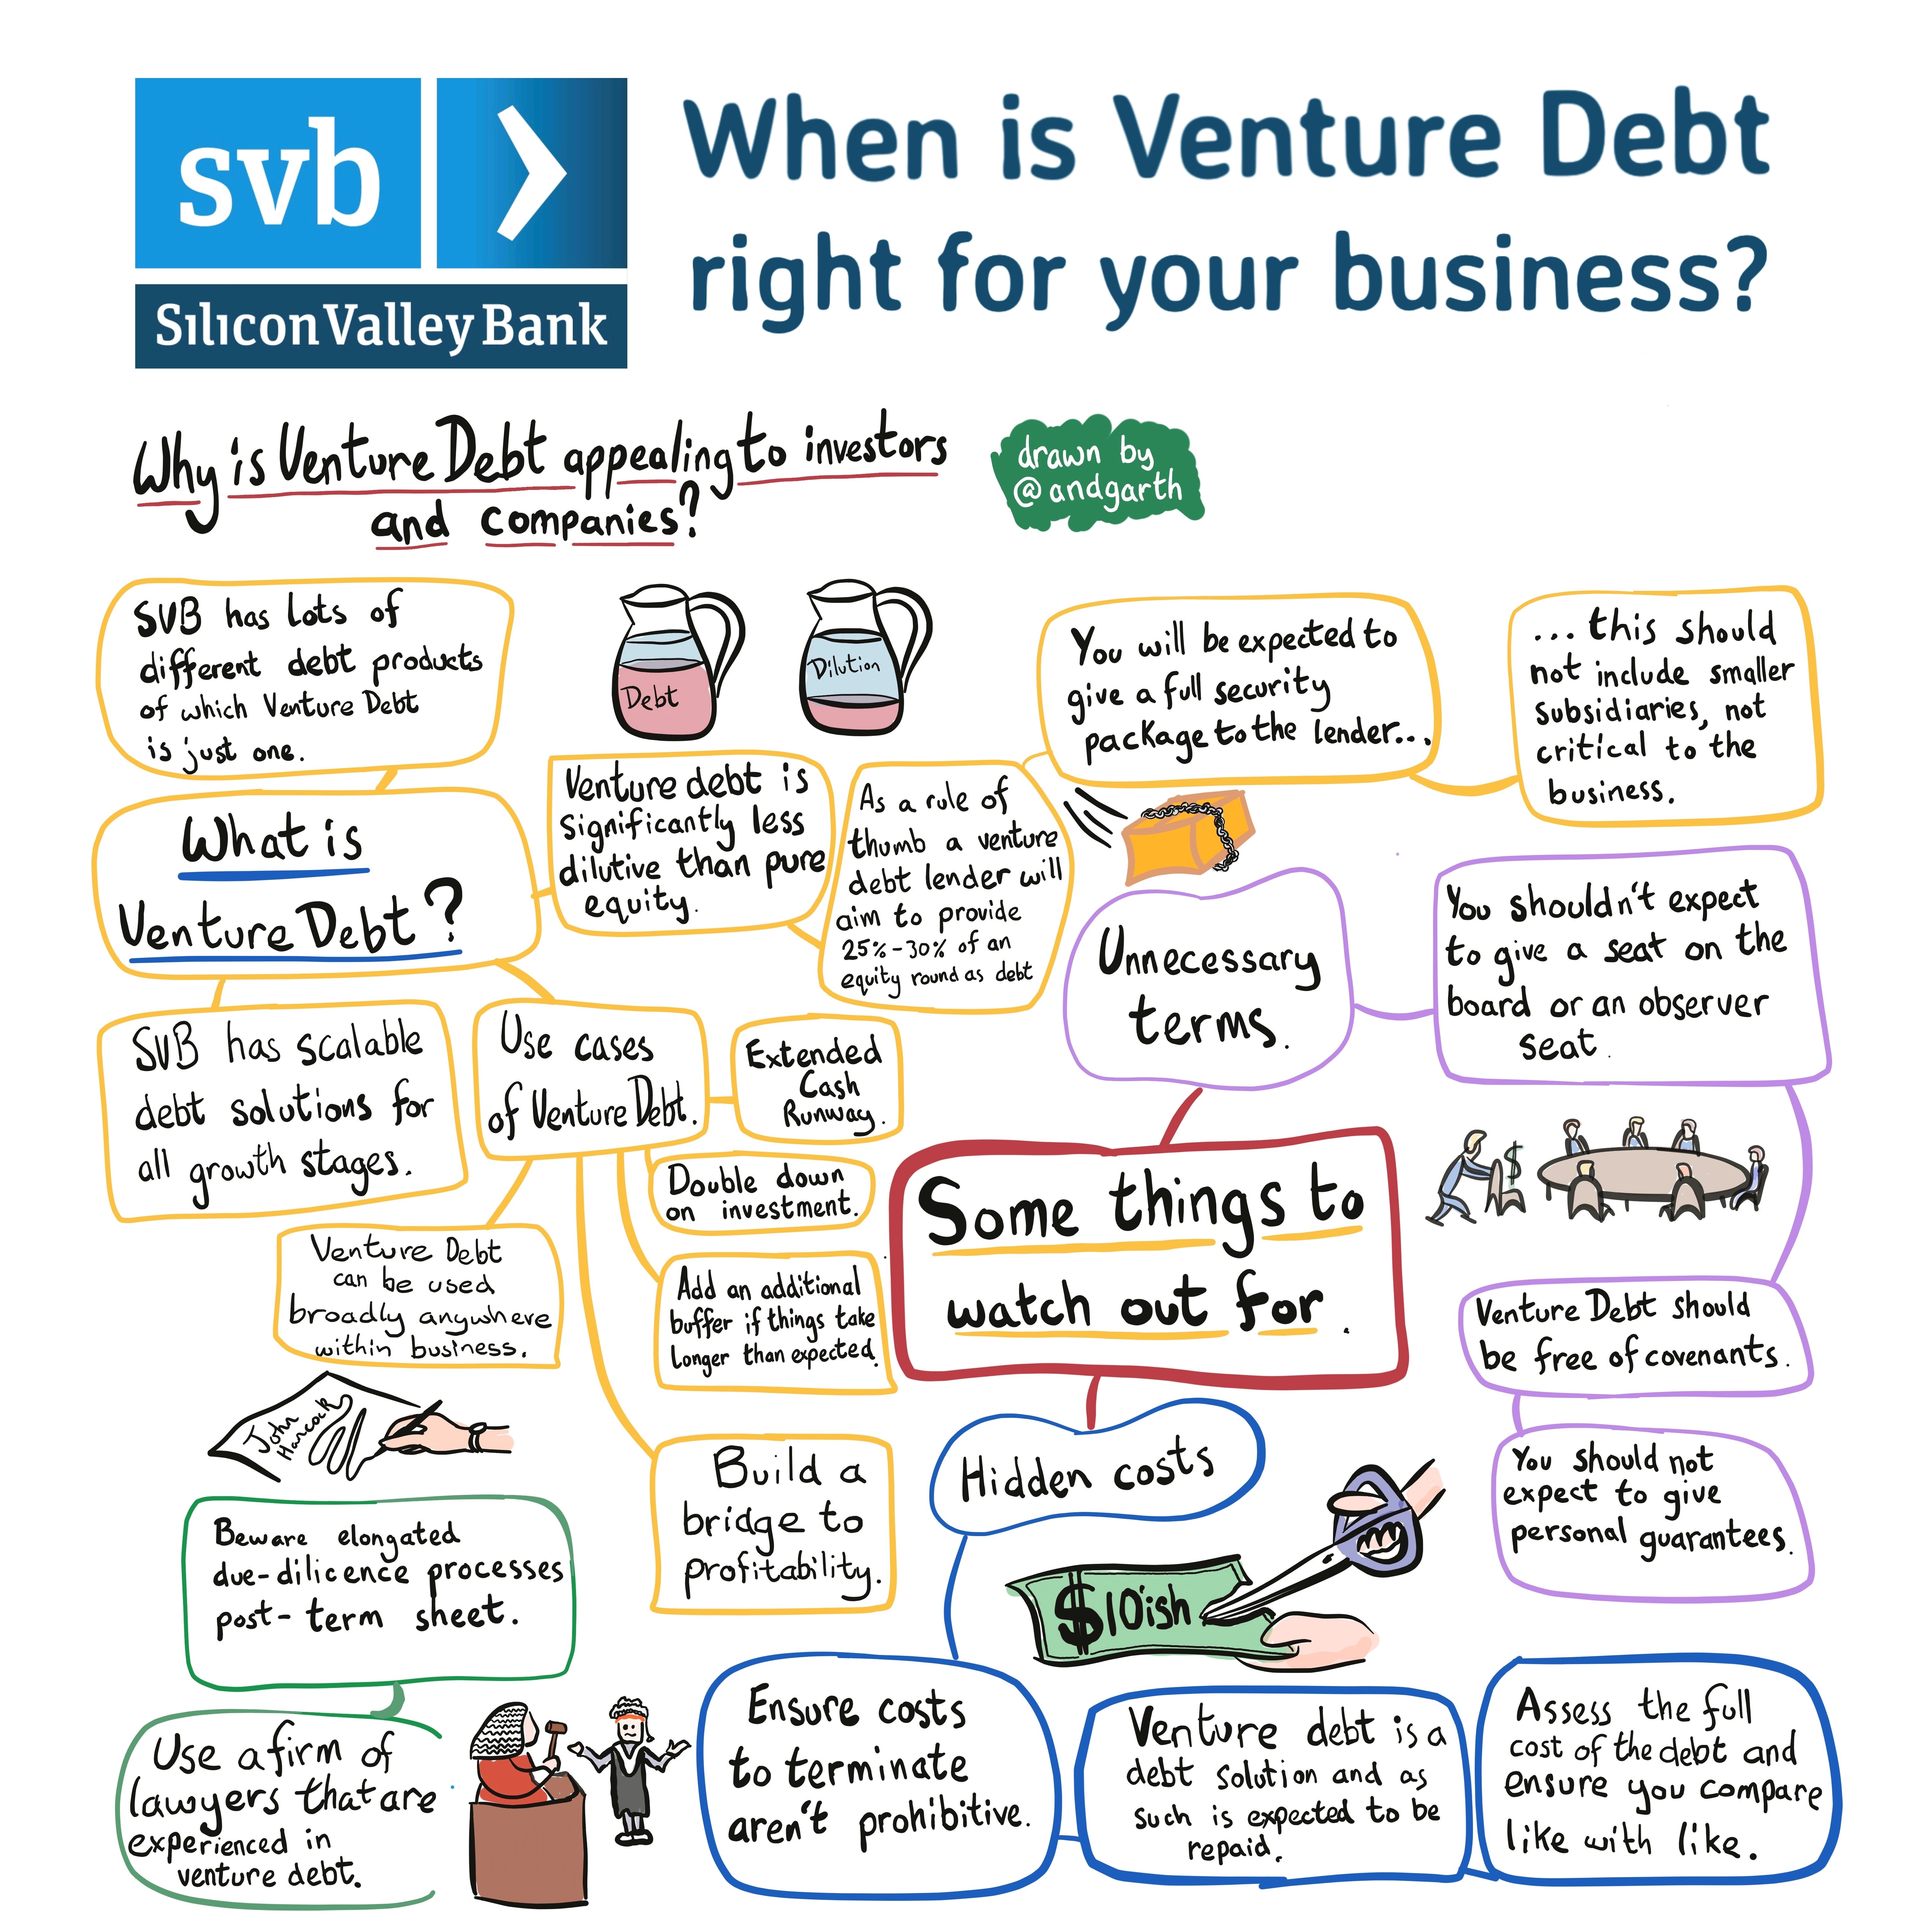 When should a company repay its venture debt?